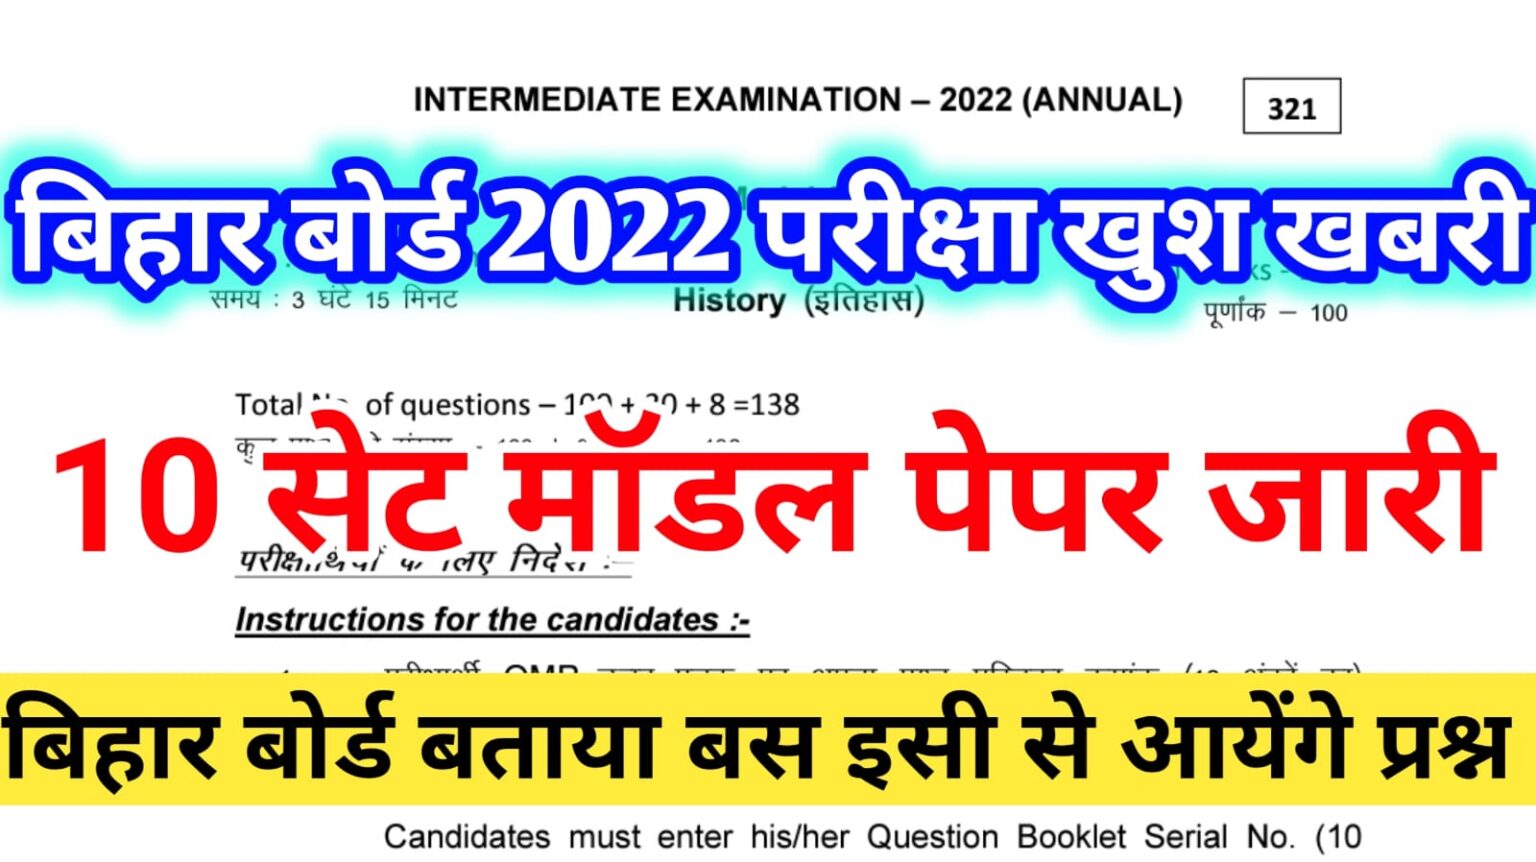 BSEB Exam 2022 : बिहार बोर्ड जारी किया 10 सेट question paper, बताया इसी से आएंगे सभी प्रश्न